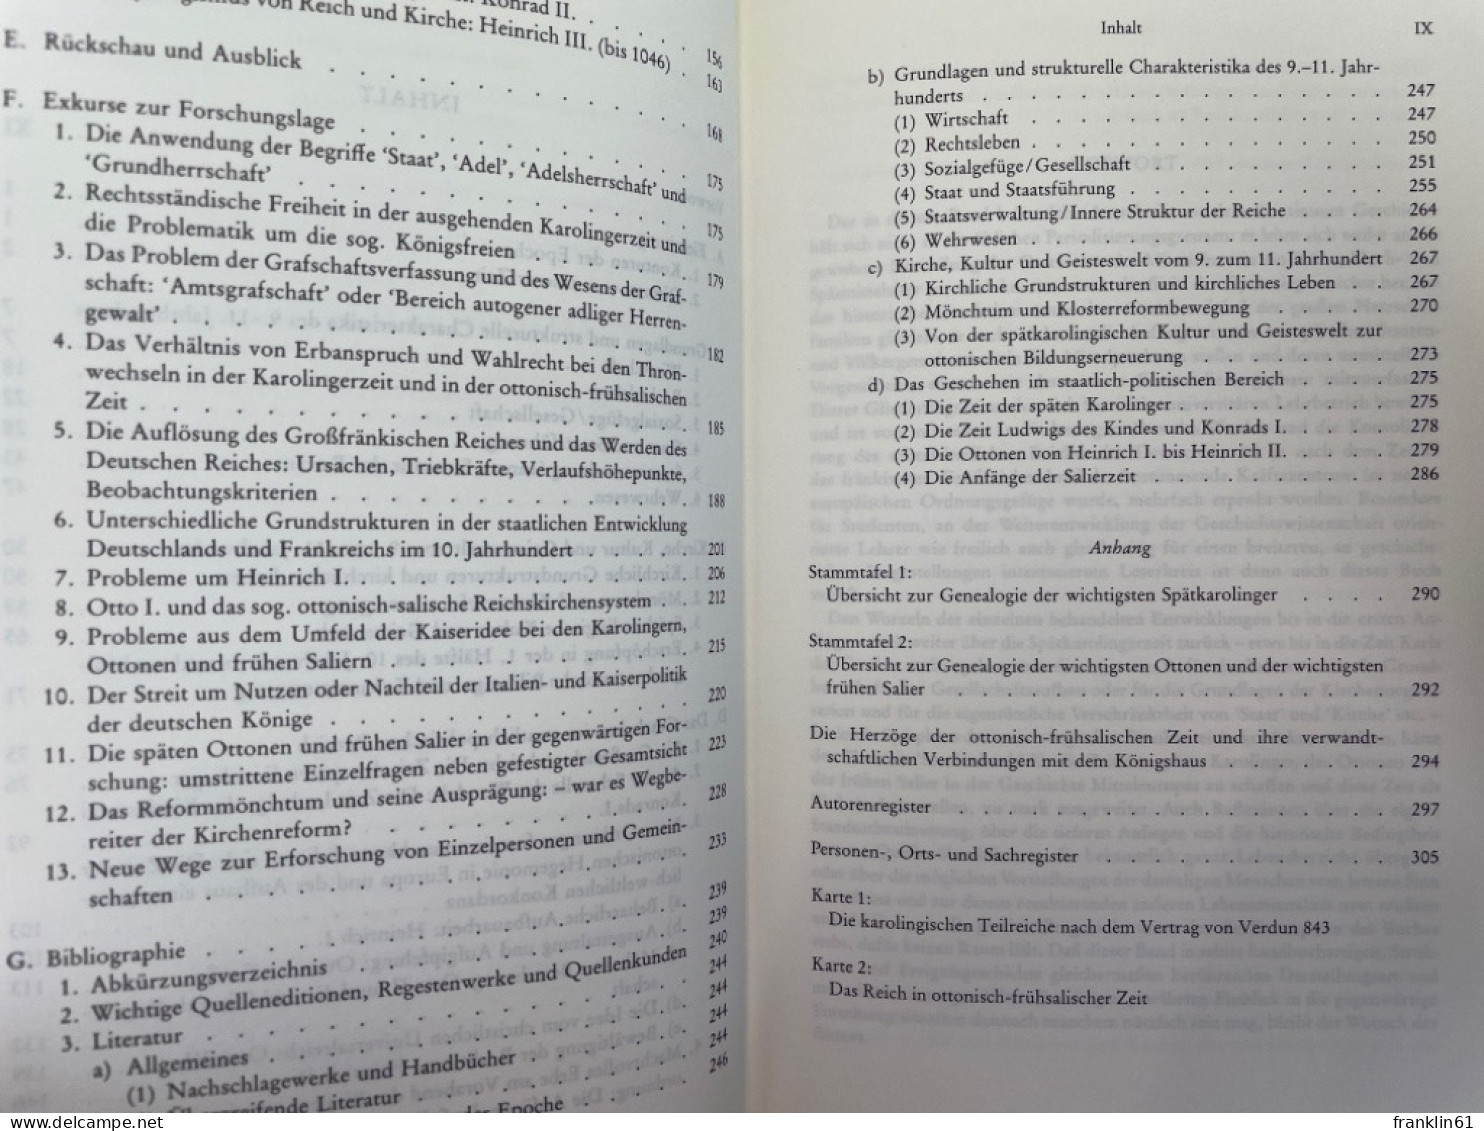 Vom Frankenreich Zur Formierung Der Europäischen Staaten- Und Völkergemeinschaft 840 - 1046 : E. Studienbuch - 4. Neuzeit (1789-1914)